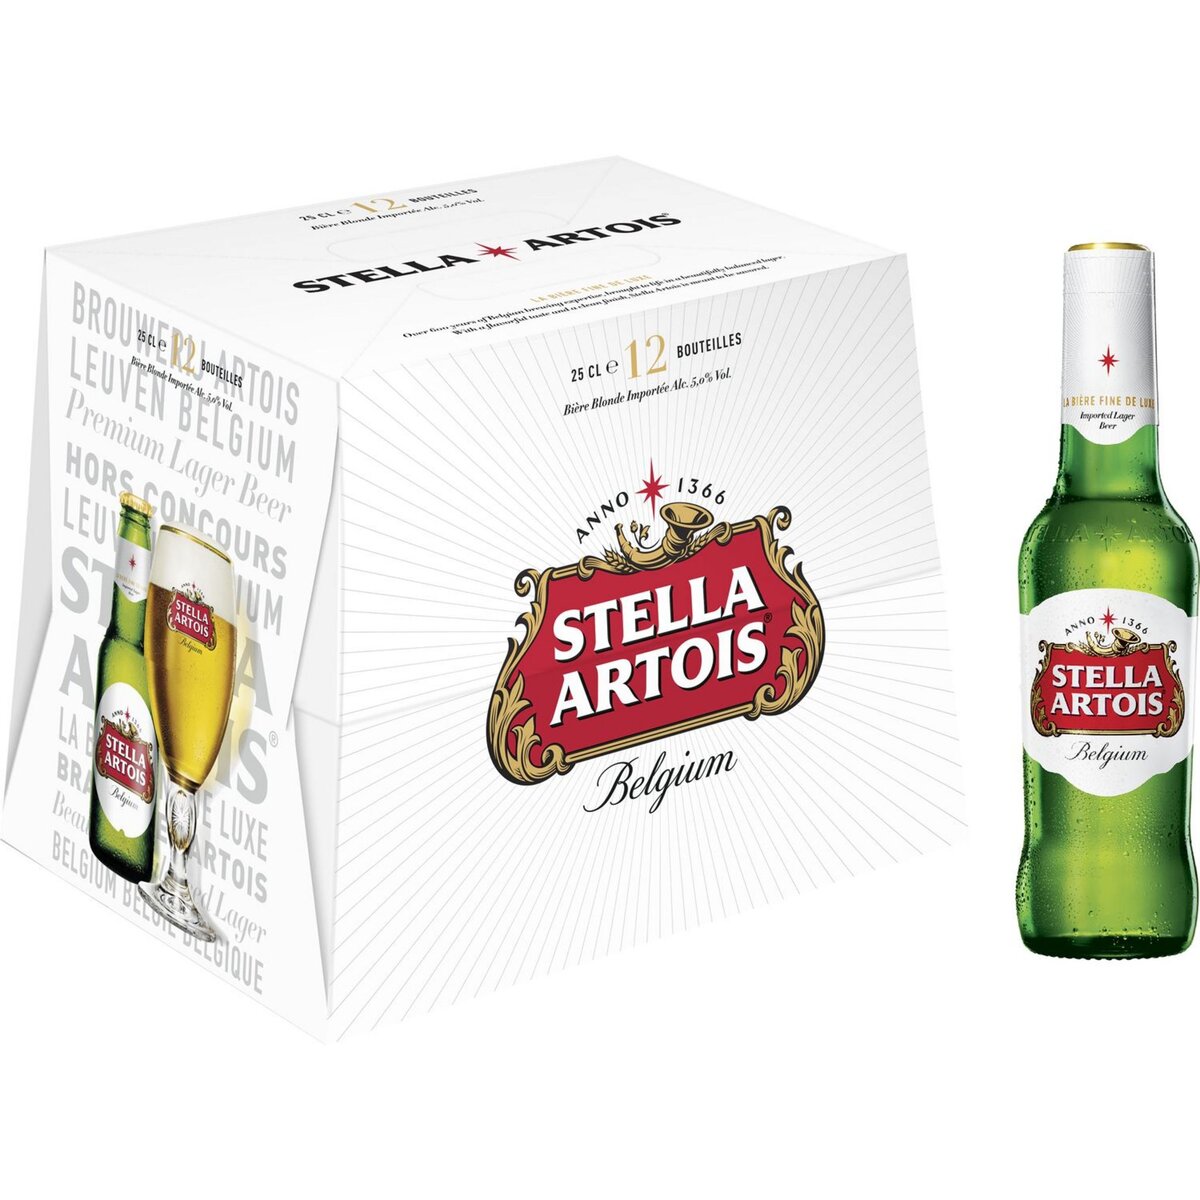 STELLA ARTOIS Bière blonde 5,2% bouteilles 12x25cl